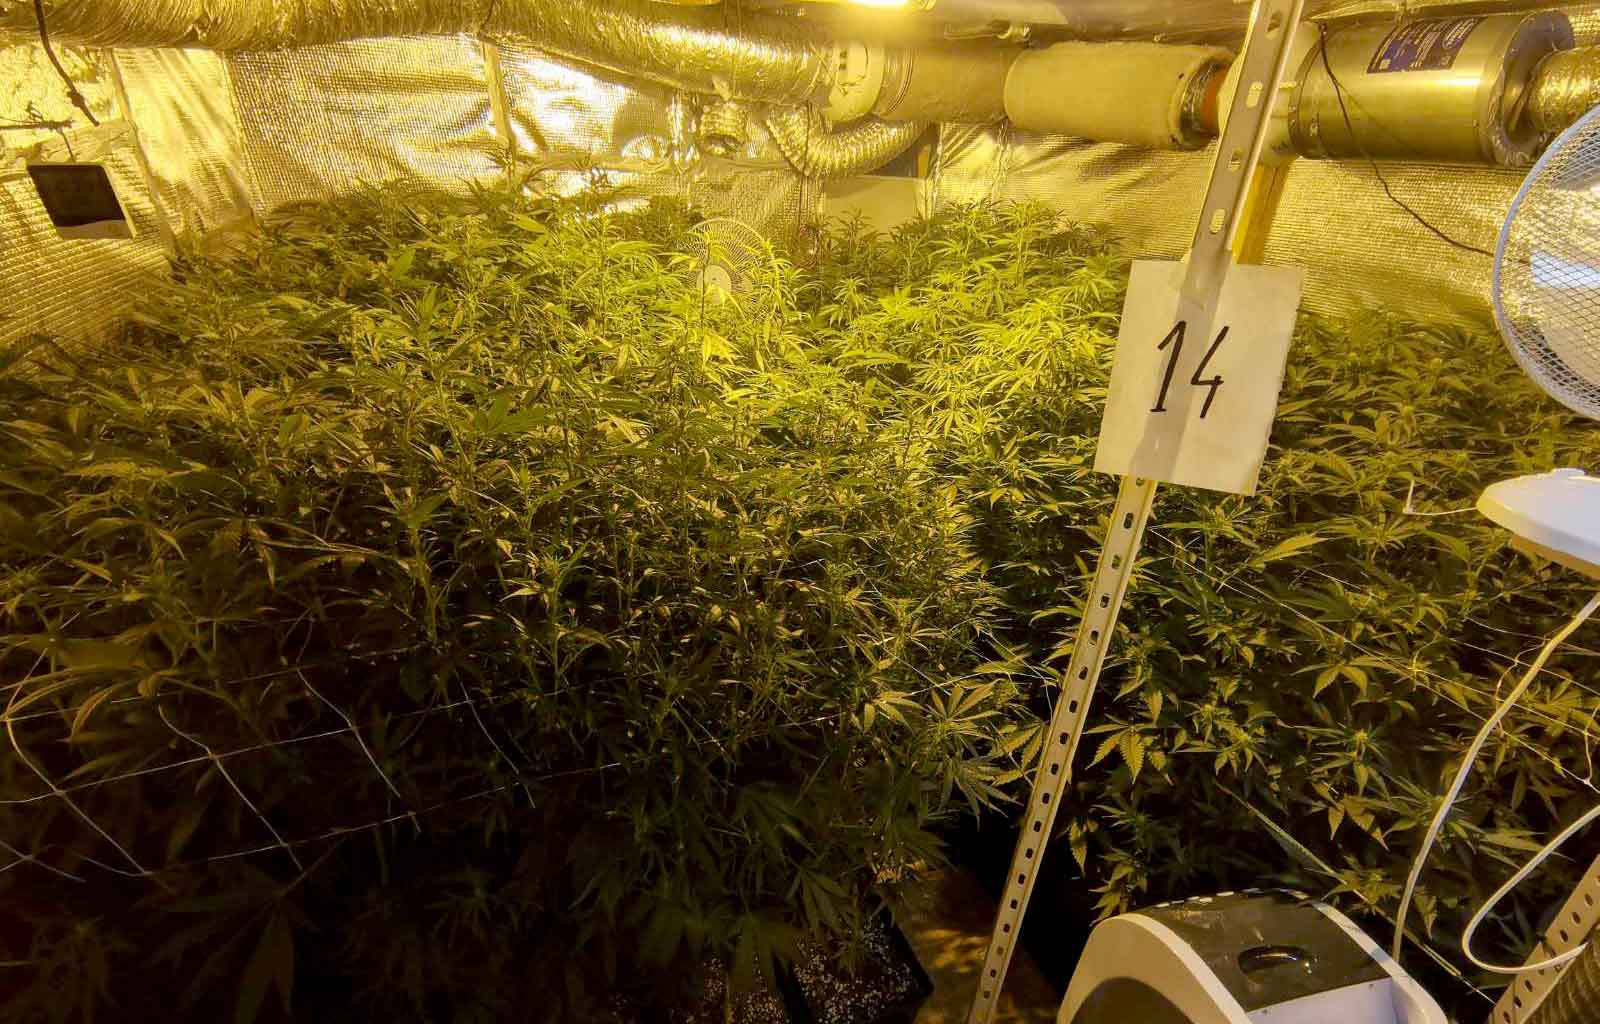 Откривена лабораторија за производњу марихуане, ухапшене две особе